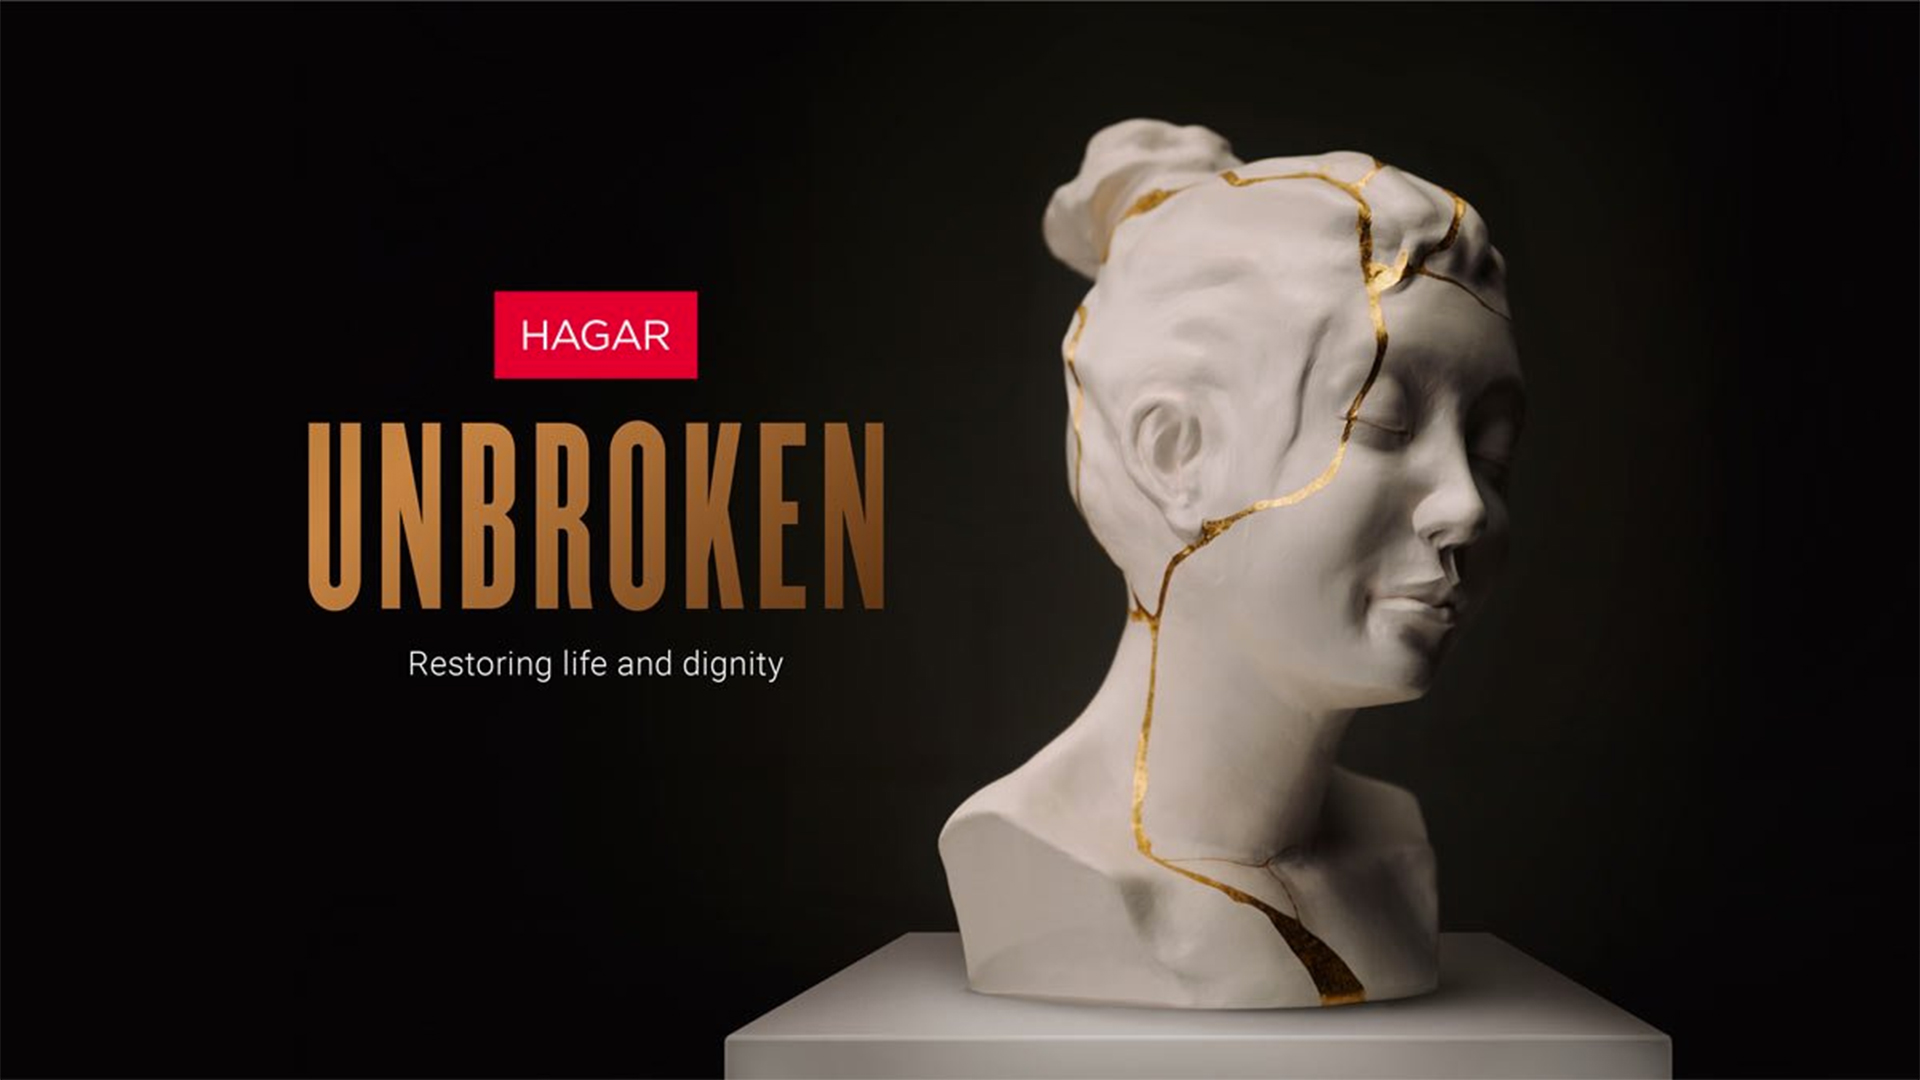 Hong Kong launch Unbroken for Hagar International